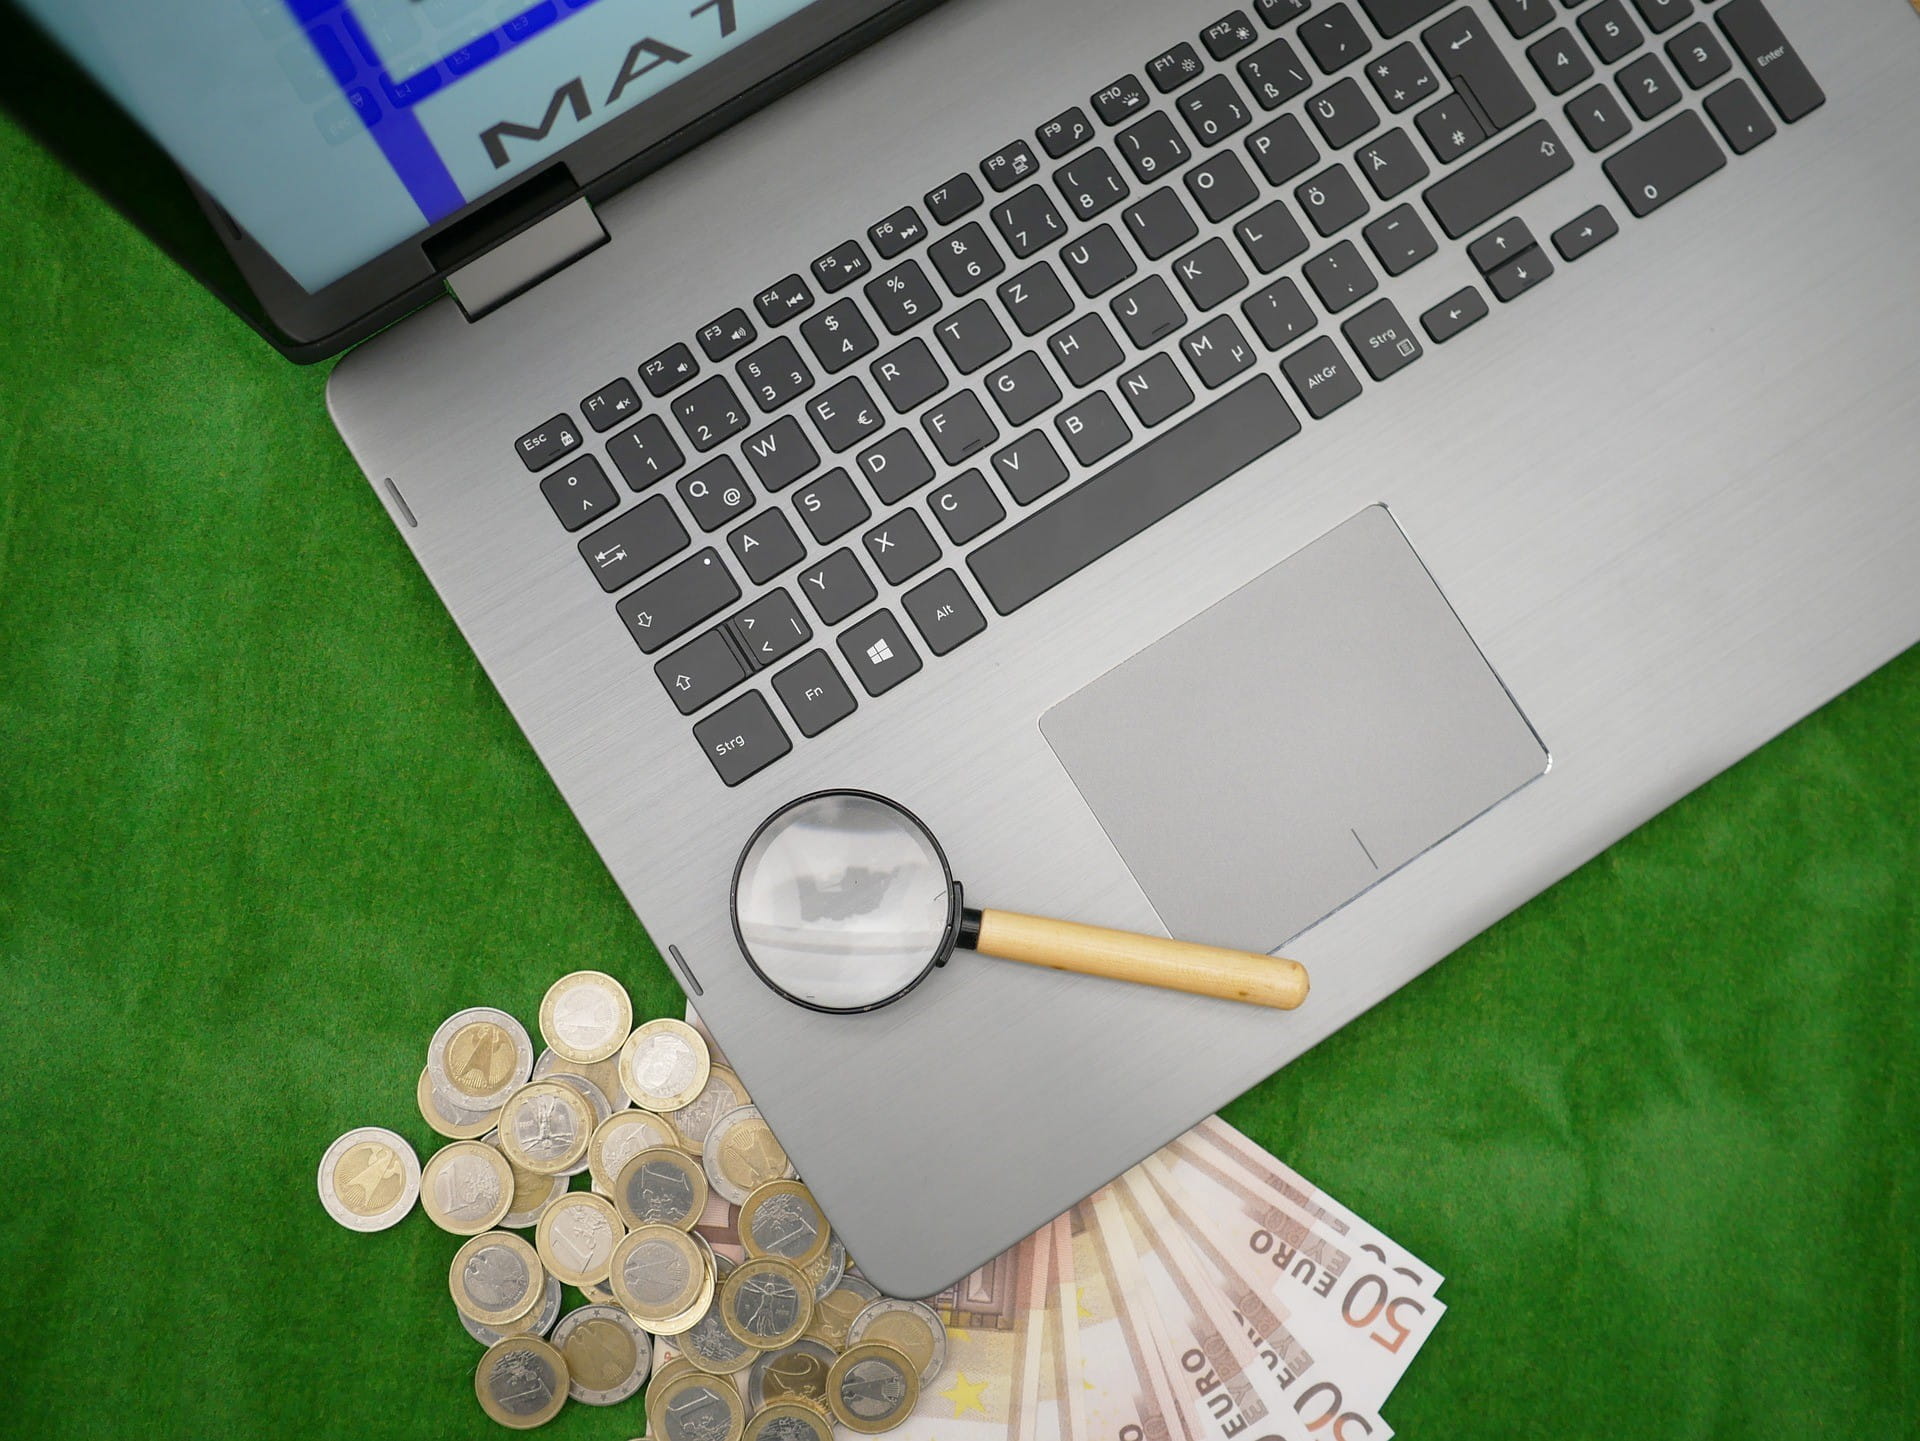 Auf einem Laptop liegt eine kleine Lupe, unter dem Laptop liegen Geldscheine und Geldmünzen.